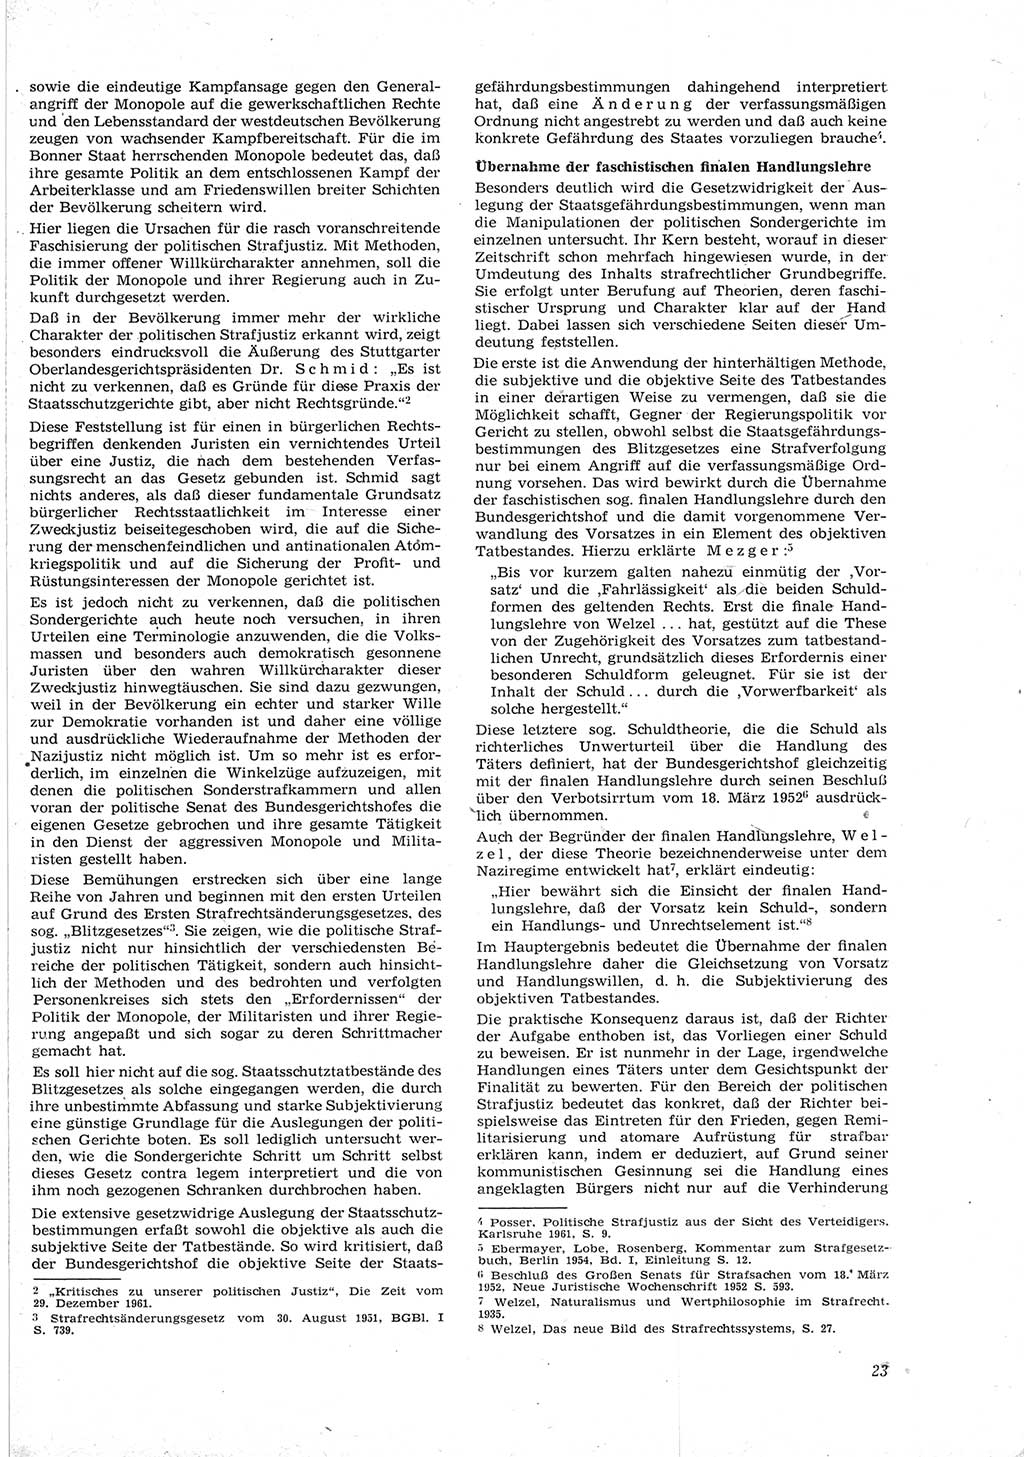 Neue Justiz (NJ), Zeitschrift für Recht und Rechtswissenschaft [Deutsche Demokratische Republik (DDR)], 17. Jahrgang 1963, Seite 23 (NJ DDR 1963, S. 23)